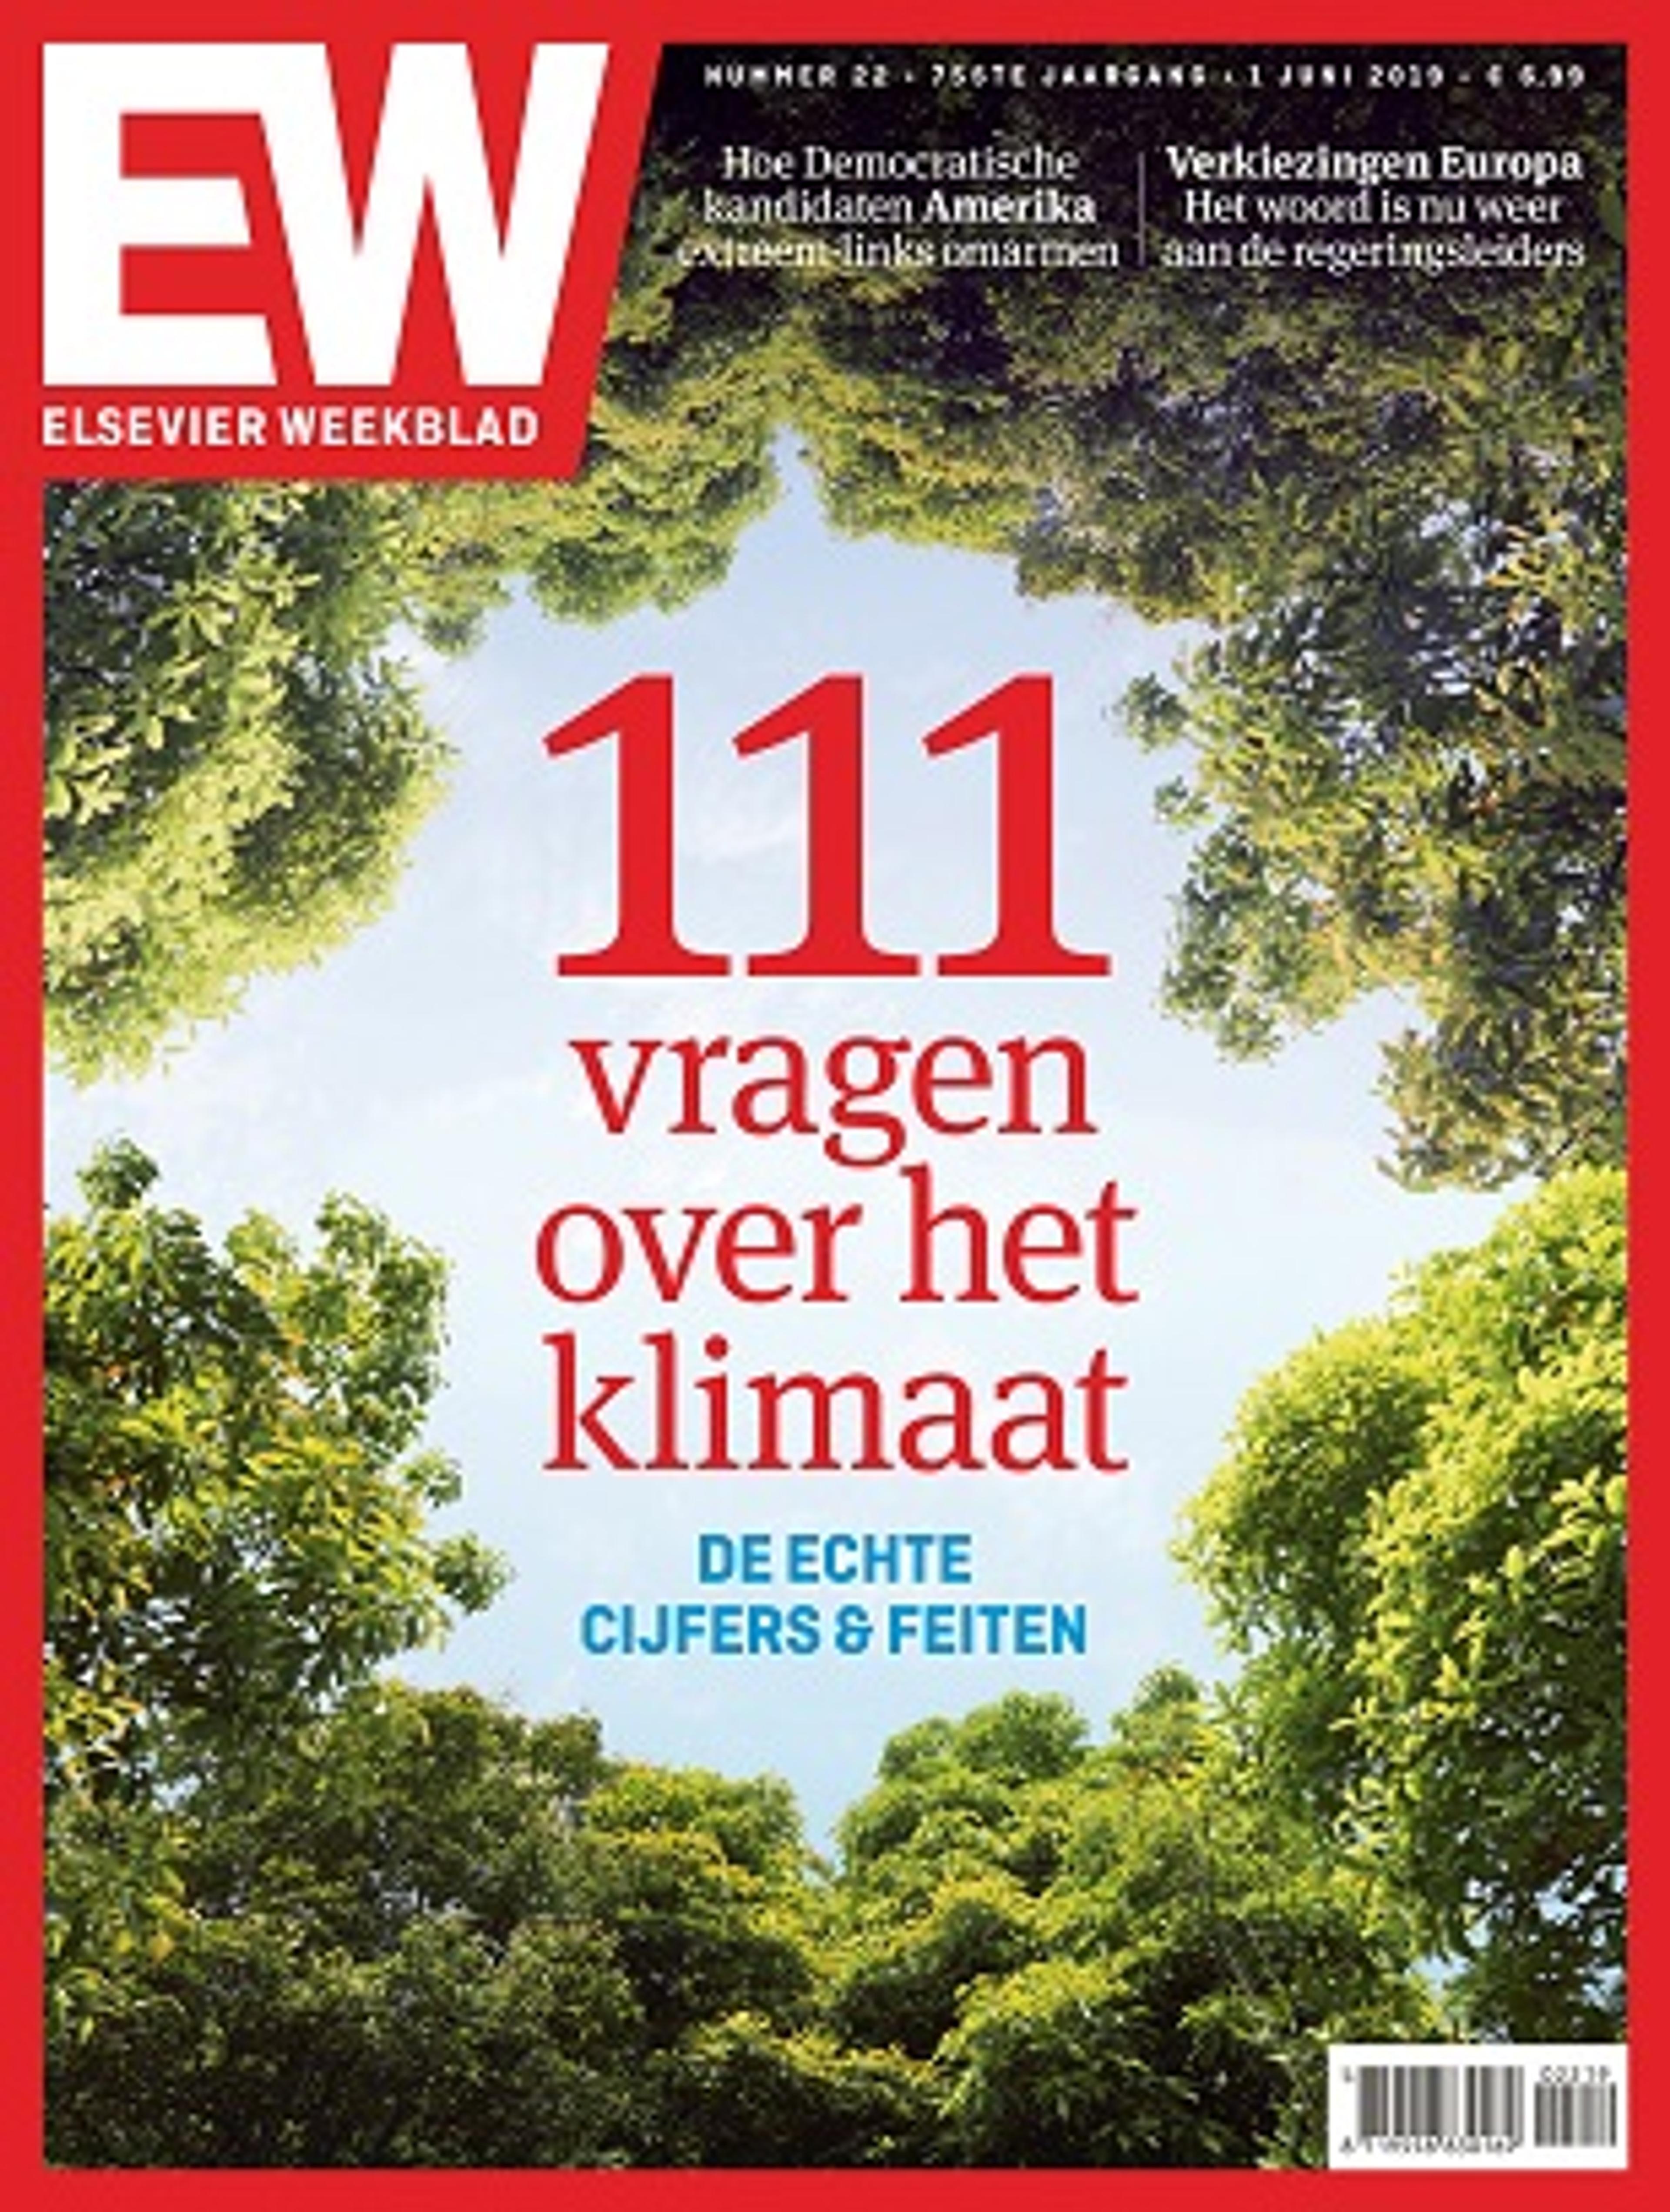 Elsevier Weekblad wijzigt van naam